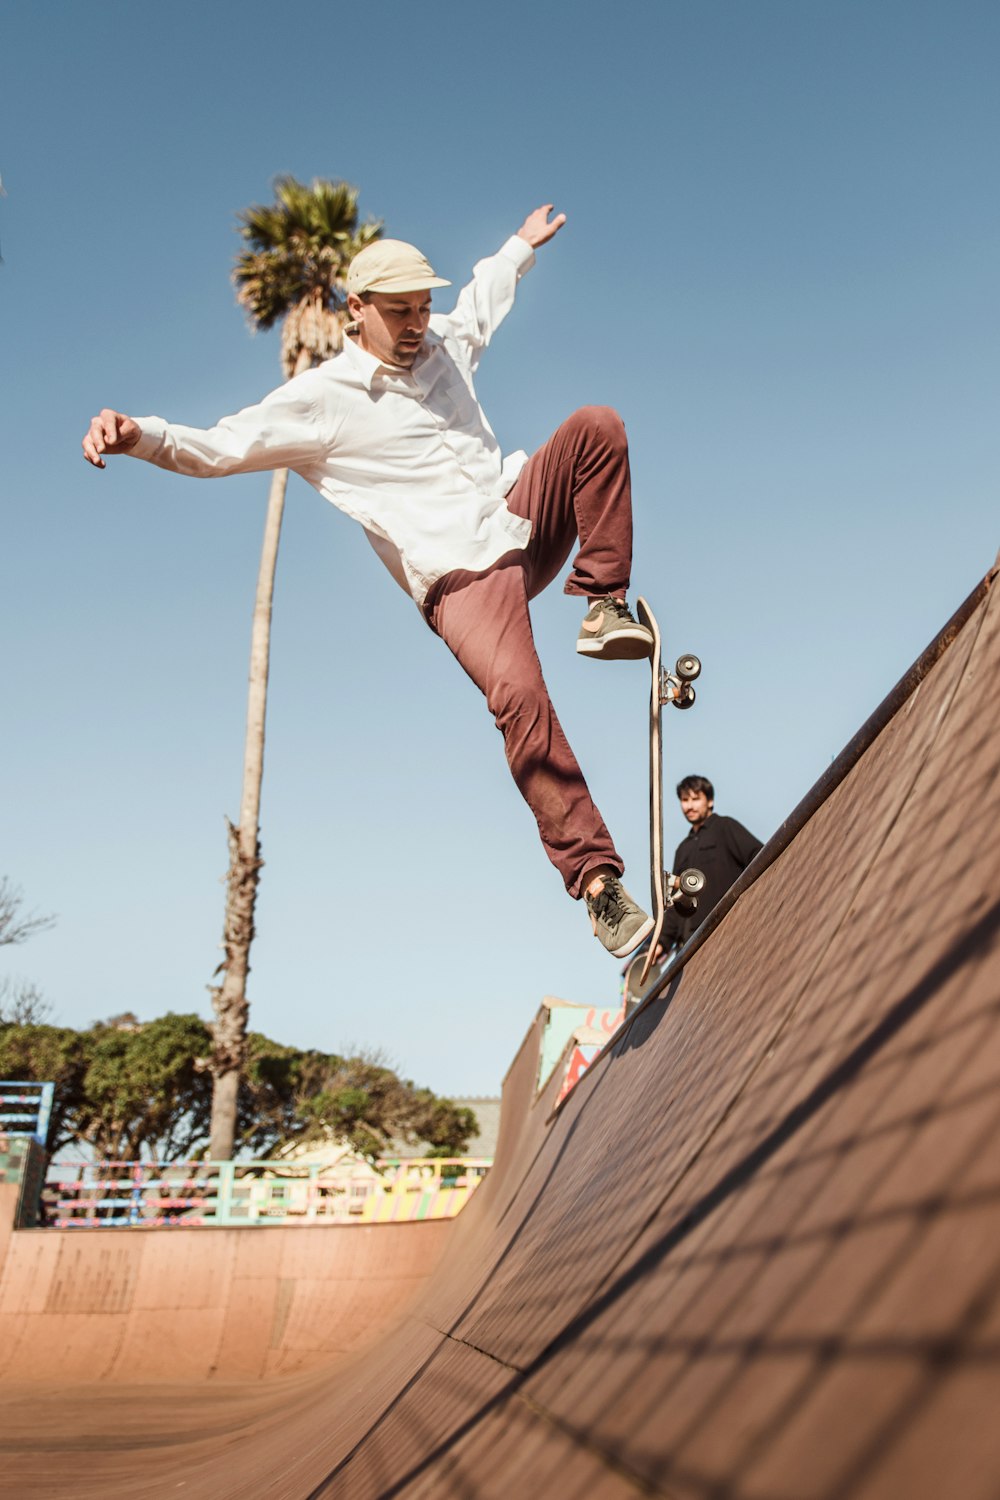 homem de camisa branca e calção vermelho saltando em poste de madeira marrom durante o dia